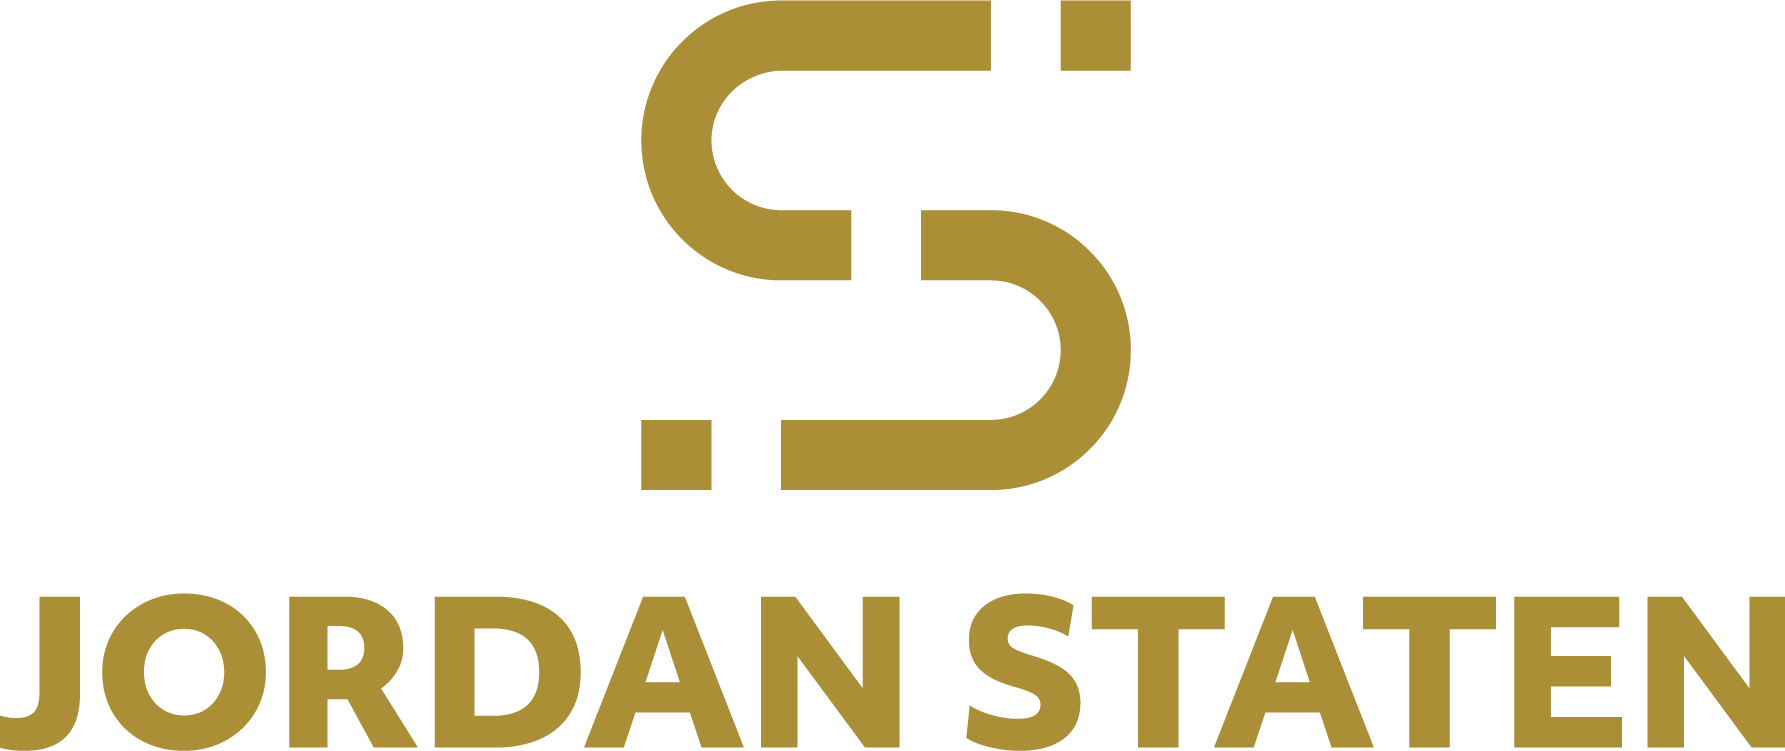 jordan staten logo